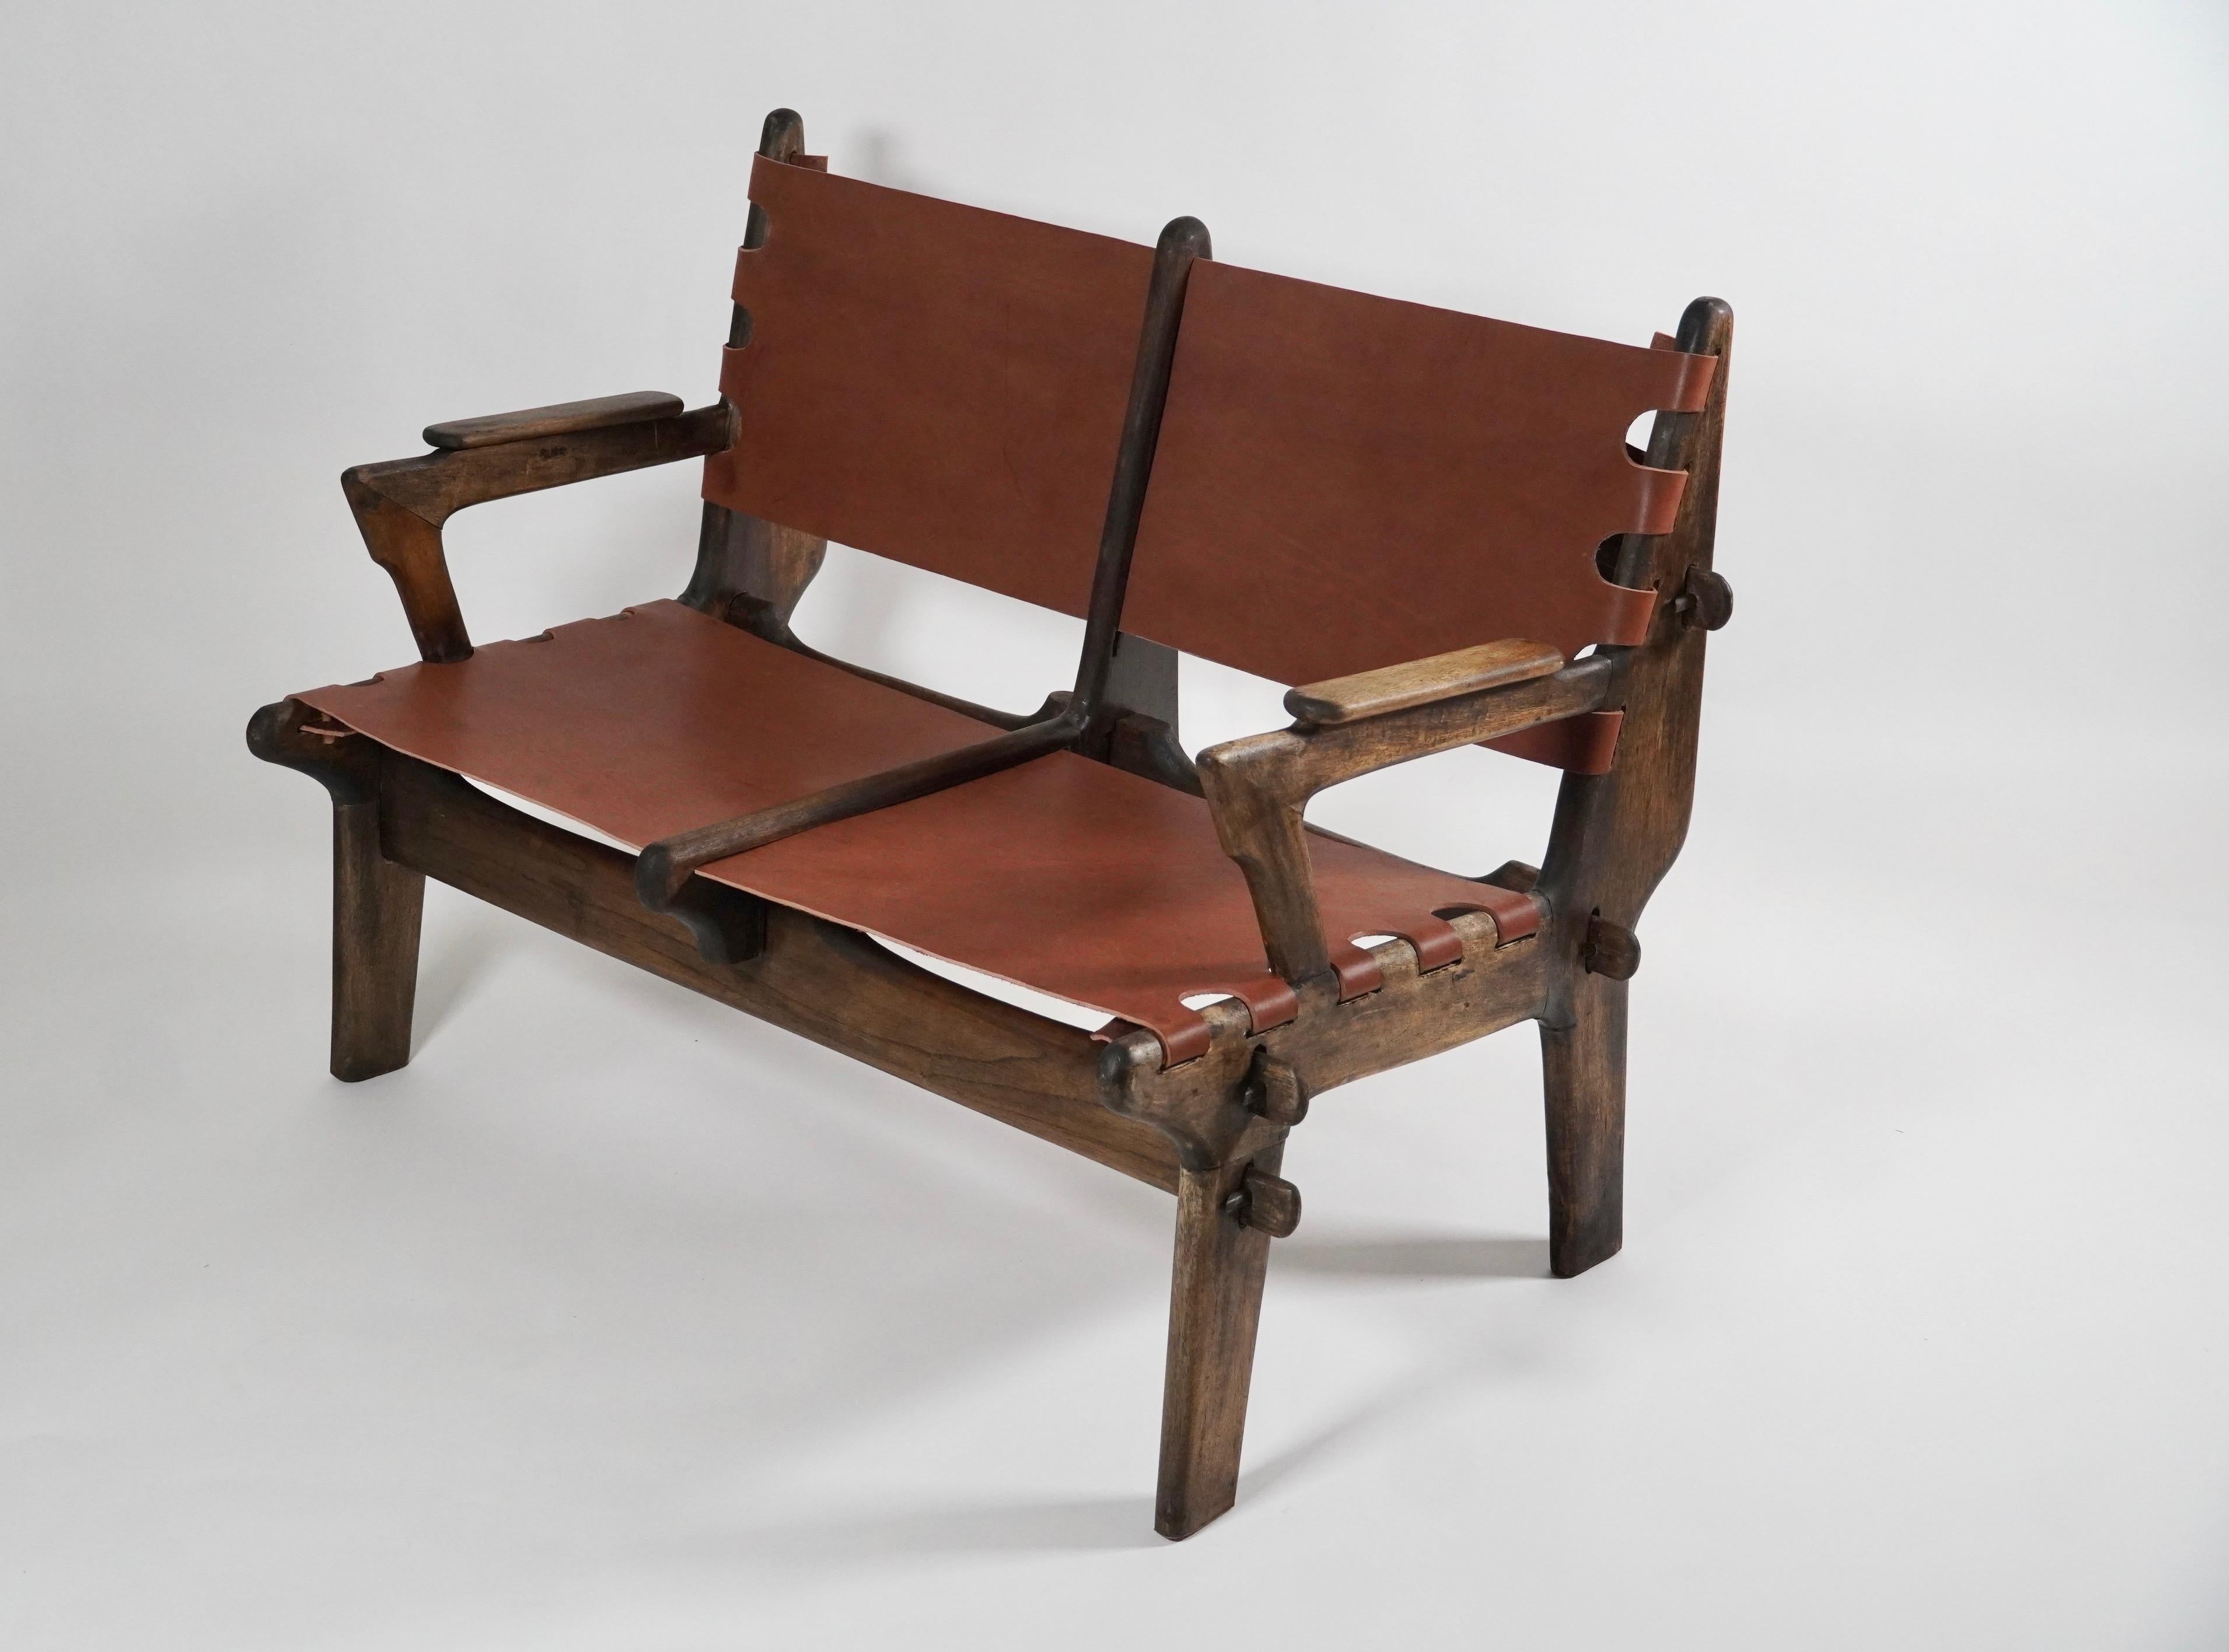 Canapé réalisé par le designer sud-américain Angel Pazmino pour Muebles de Estilo of Ecuador, vers les années 1960. Entièrement fabriqué à la main à partir de bois tropicaux indigènes de l'Équateur et recouvert d'un épais cuir latigo de couleur